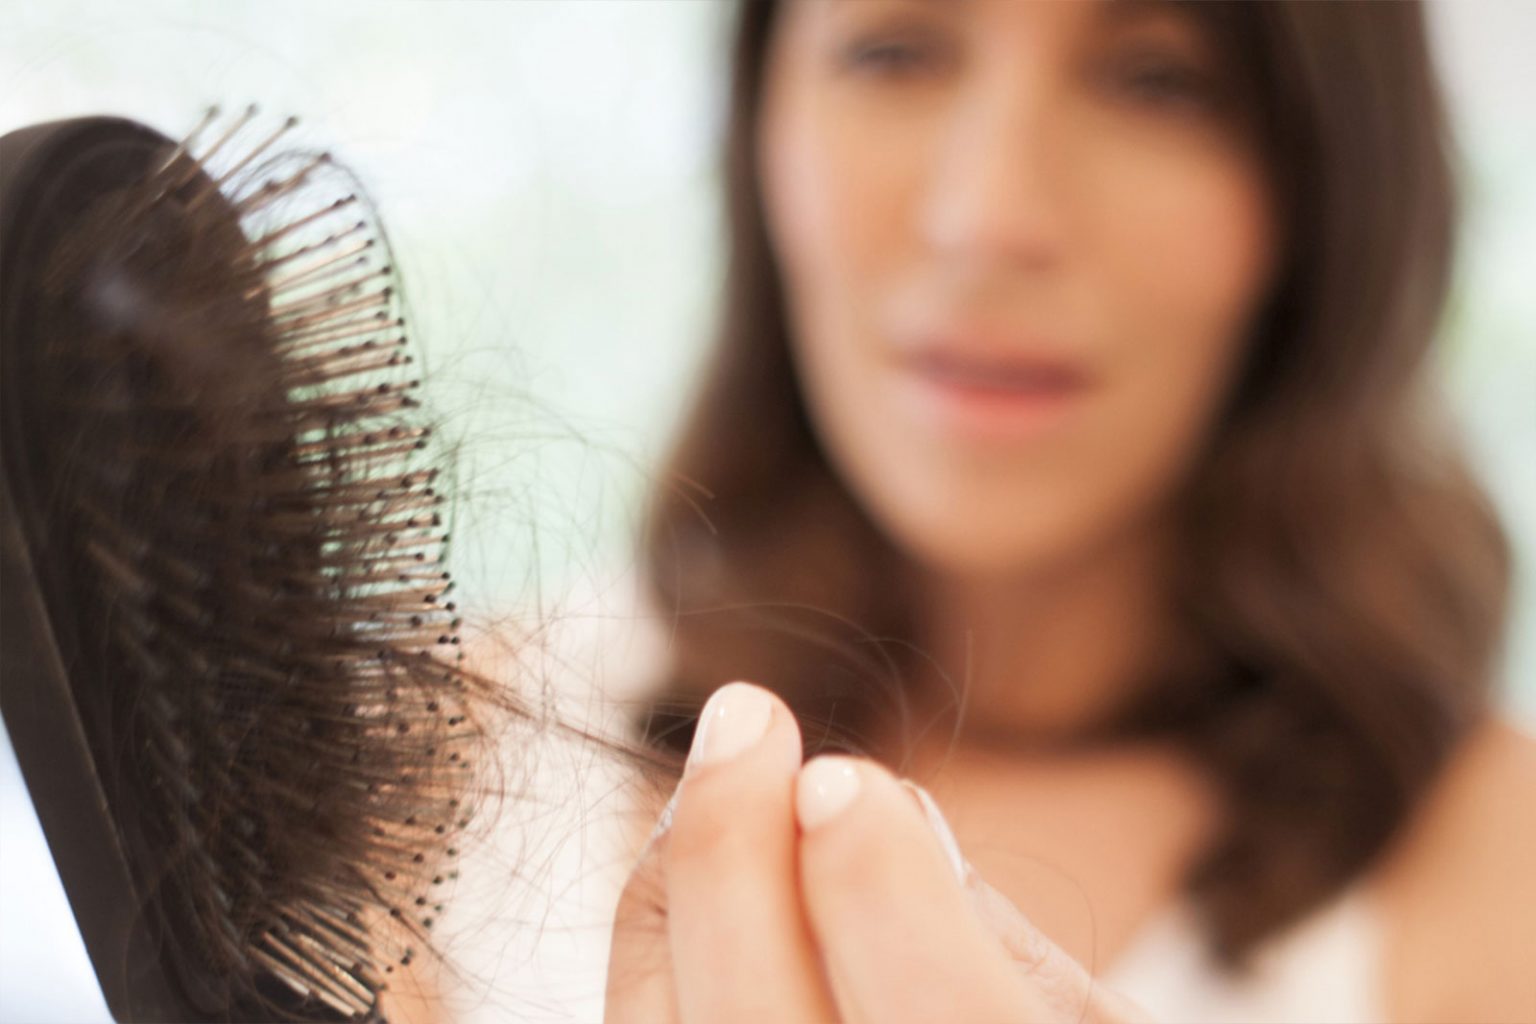 أسباب تساقط الشعر عند النساء وعلاجه